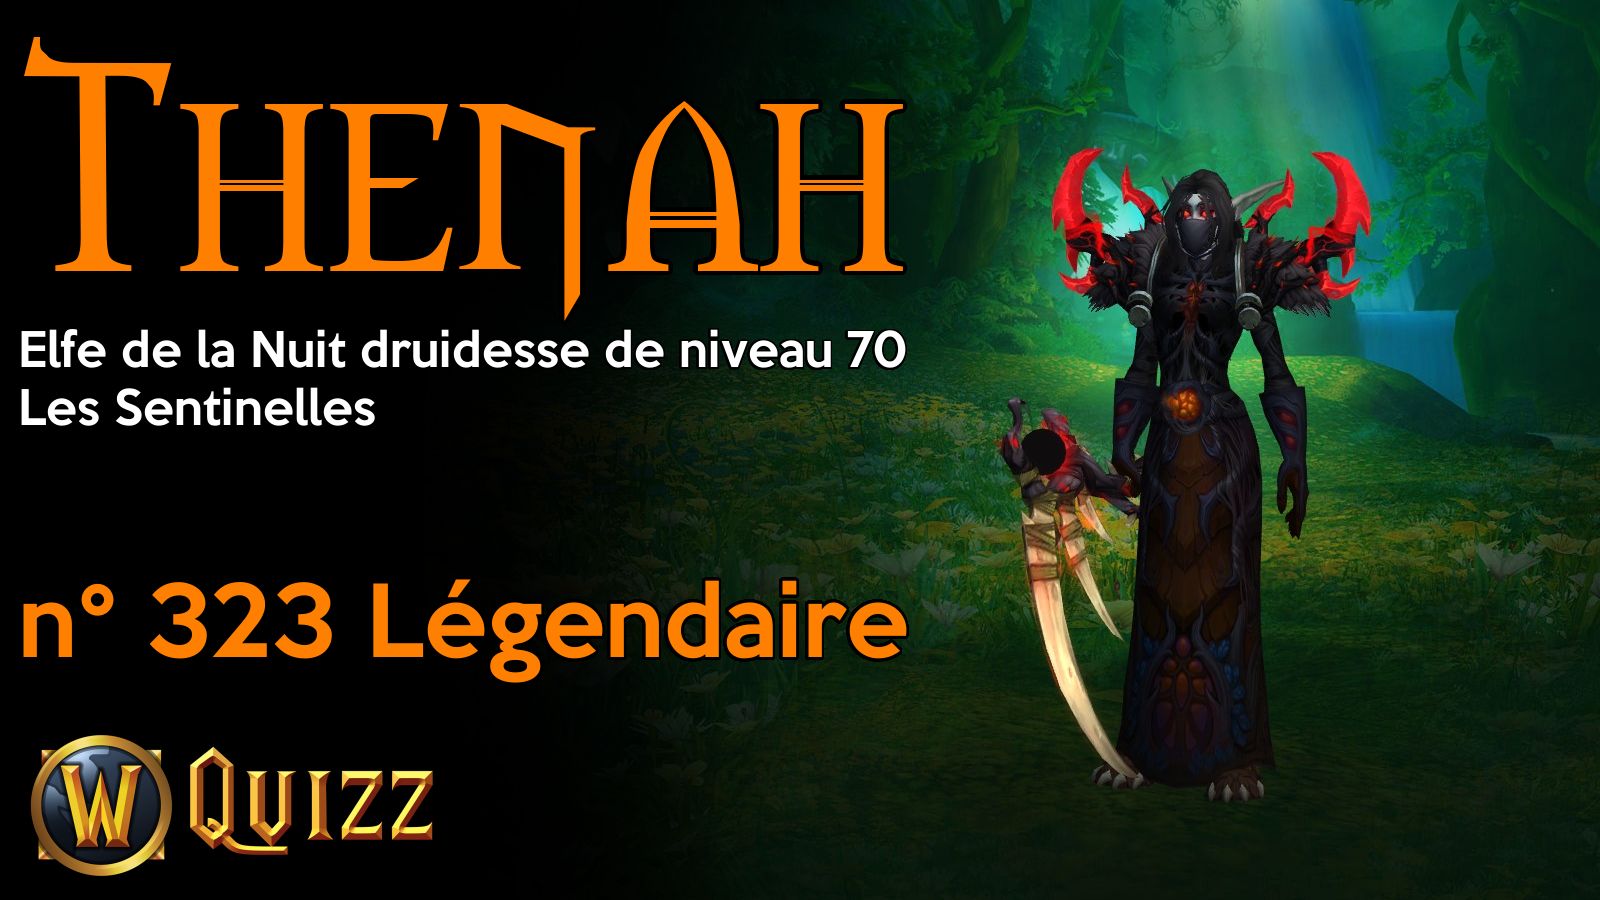 Thenah, Elfe de la Nuit druidesse de niveau 70, Les Sentinelles